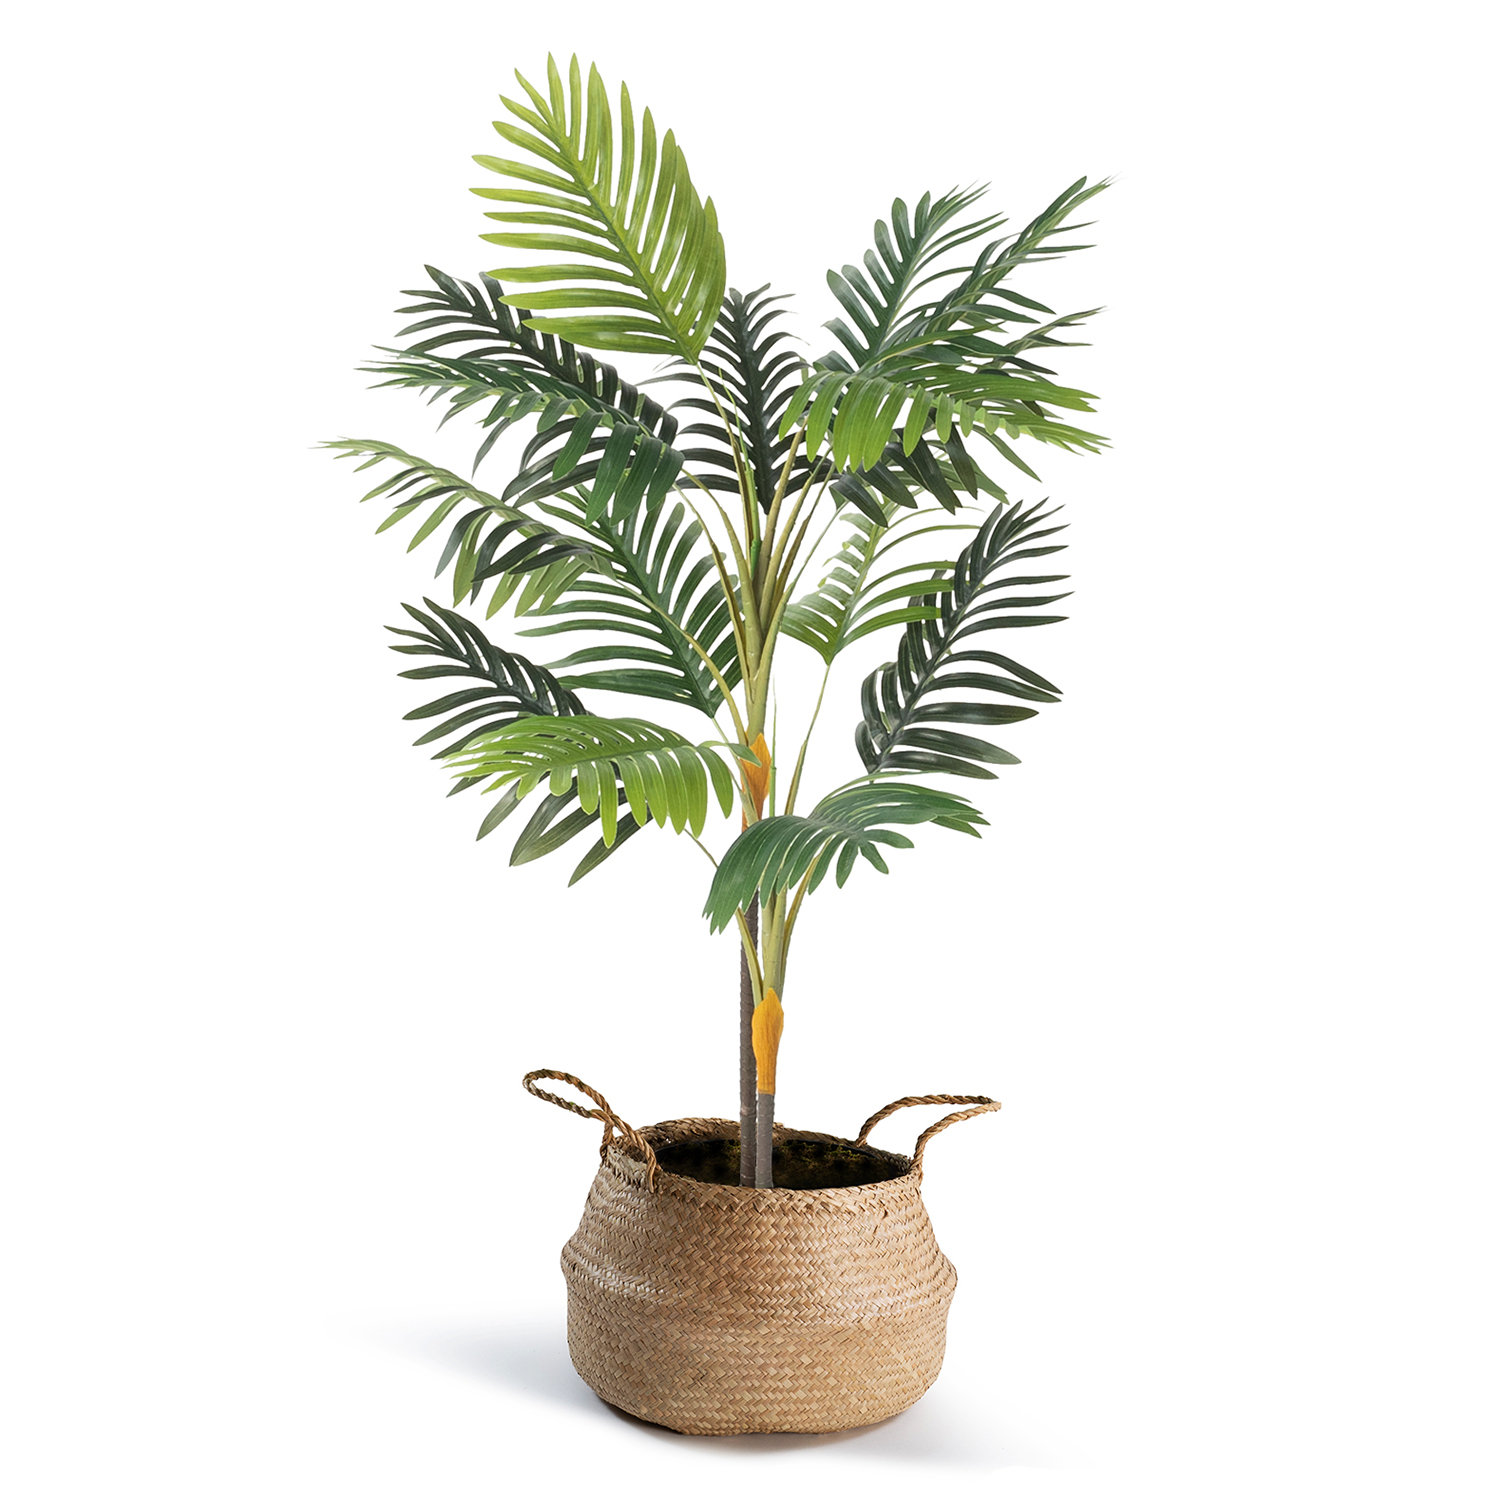 Faux palmier artificiel pas cher 115 cm avec pot